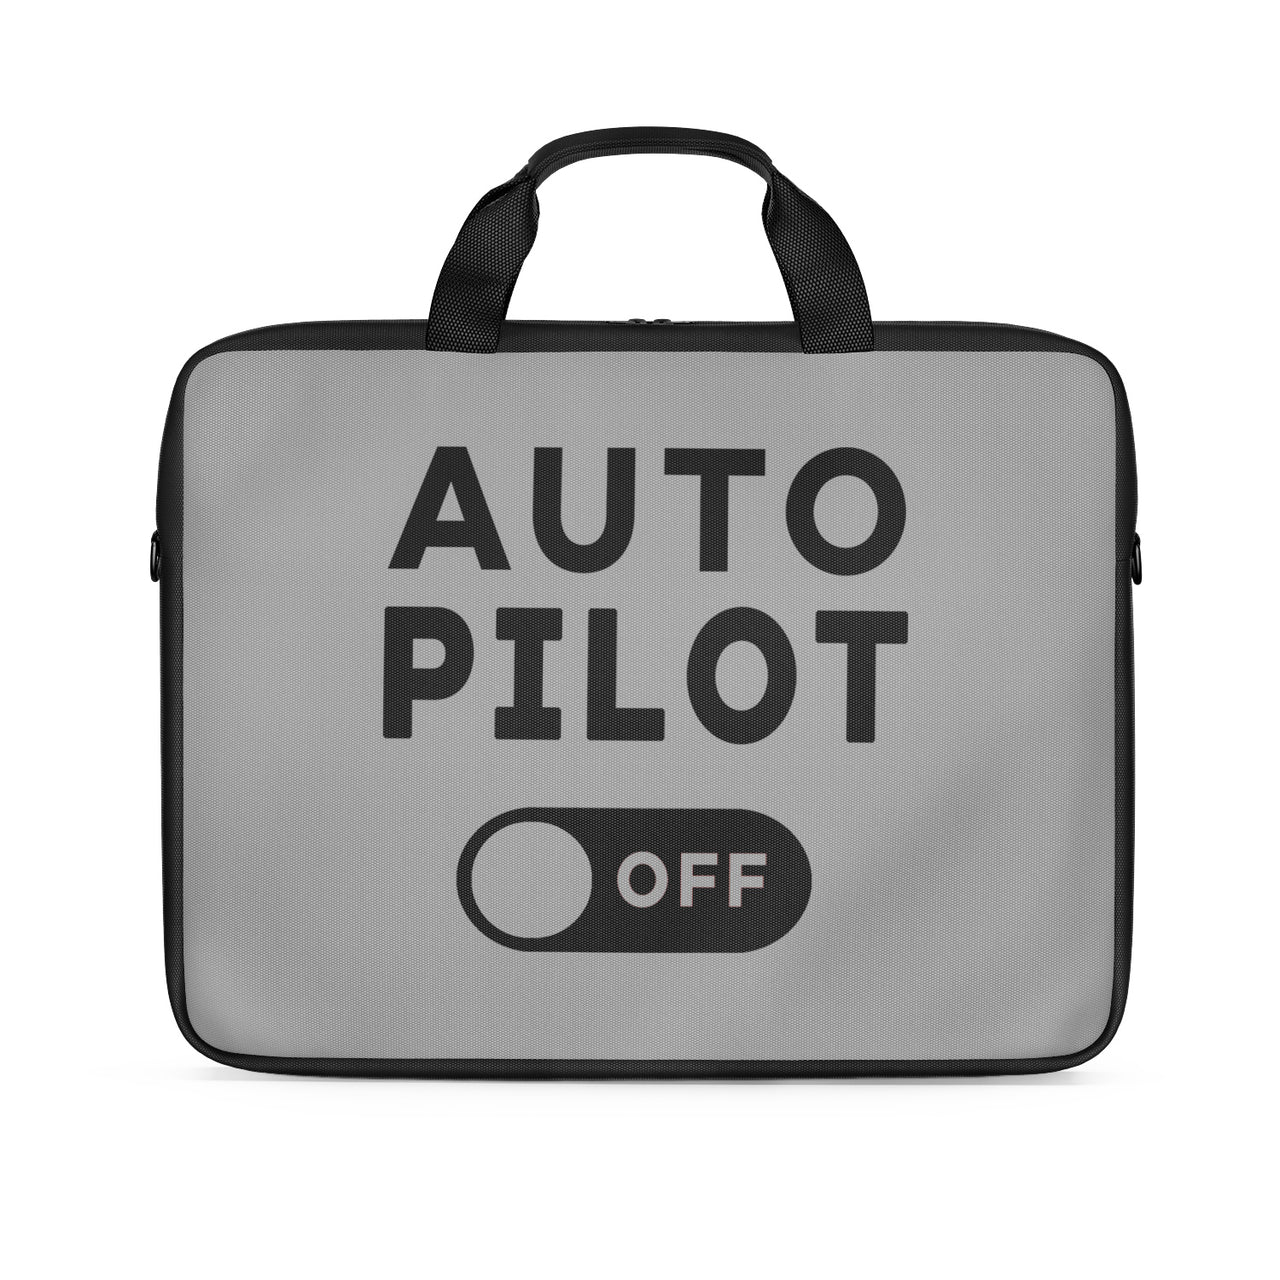 Auto Pilot Off Designed Laptop & Tablet Bags